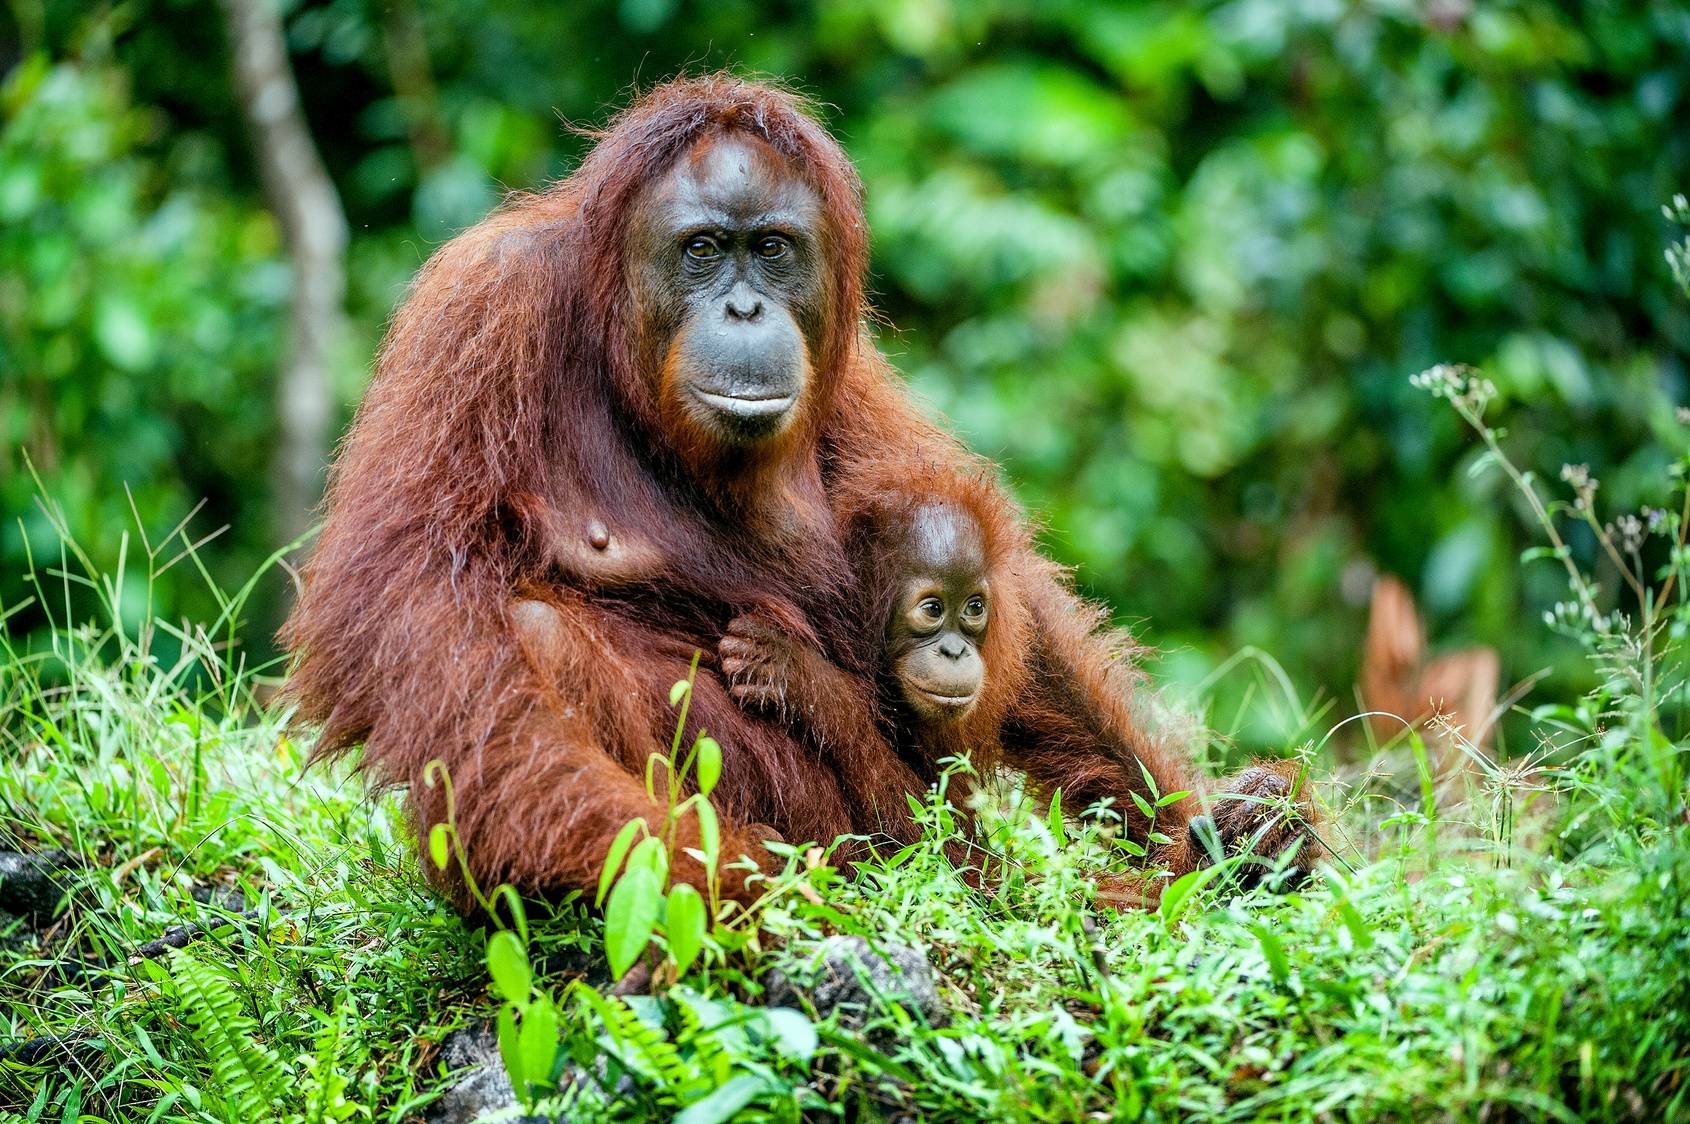 Mama orangutanica ze swoim dzieckiem w naturalnym środowisku na Borneo. Sprawdź, dlaczego olej palmowy jest szkodliwy nie tylko dla zdrowia, ale i dla środowiska.